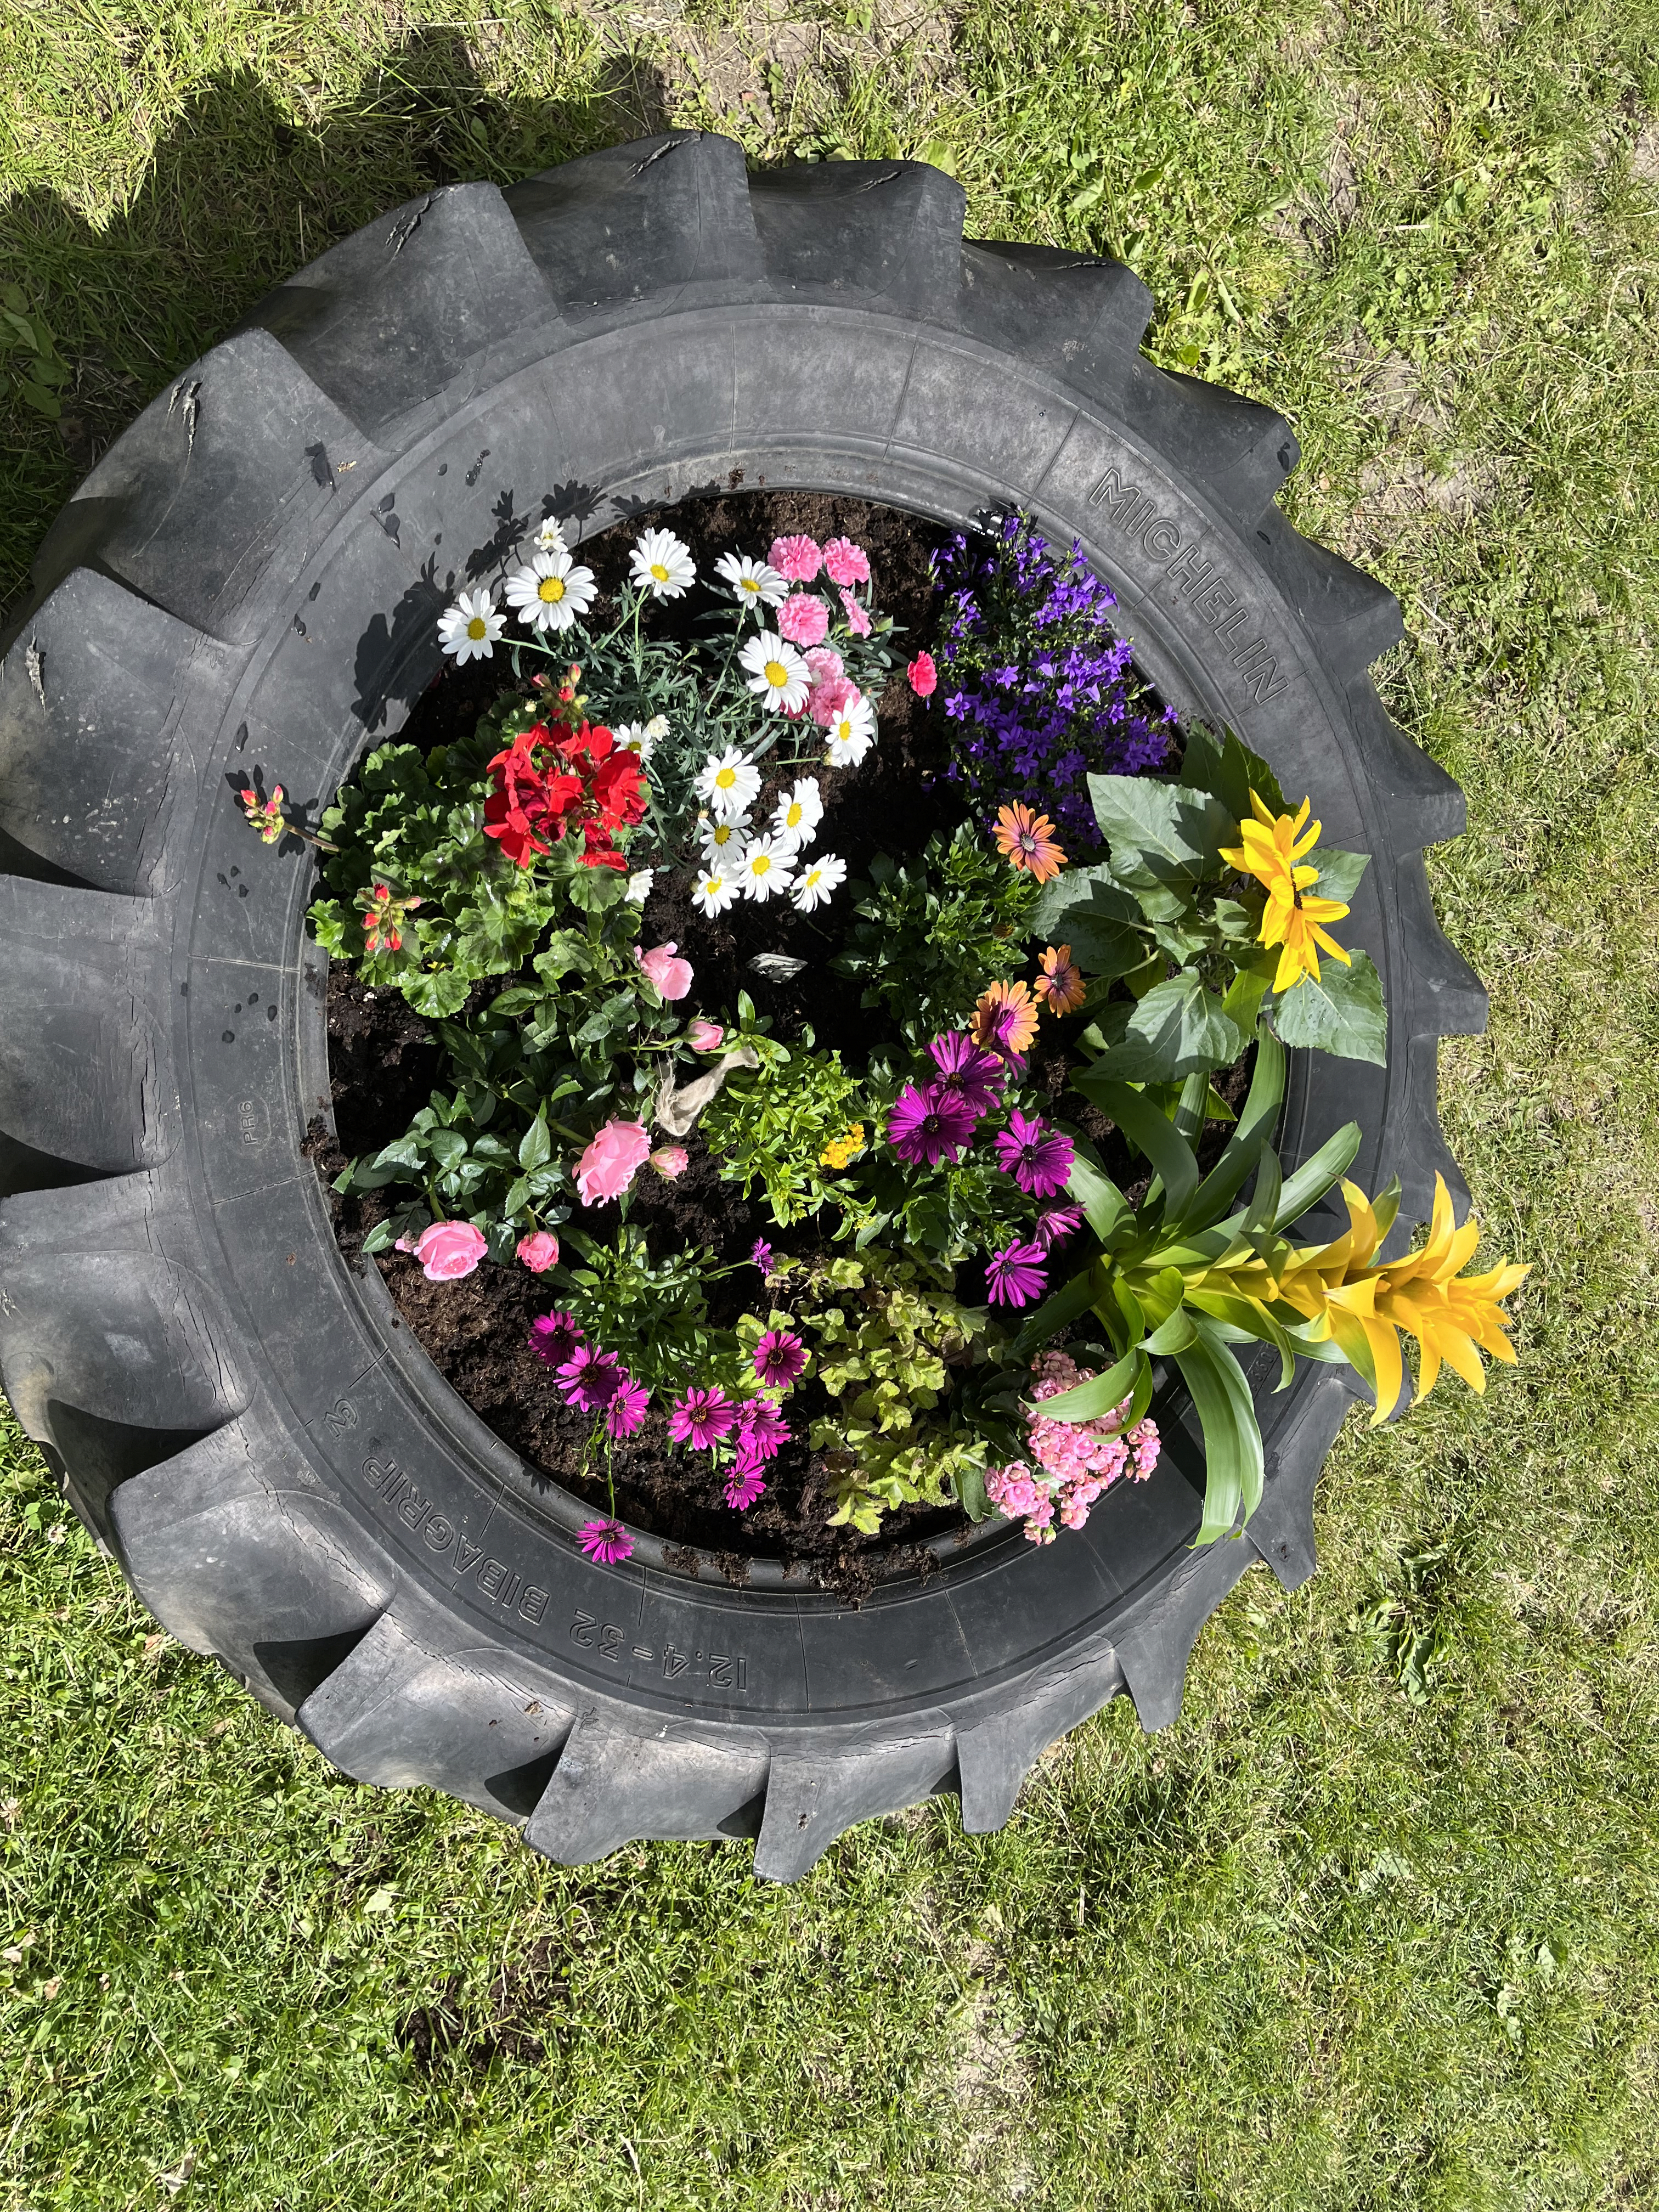 Billede af blomster i traktordæk, fra bedsteforældre blomsterdag